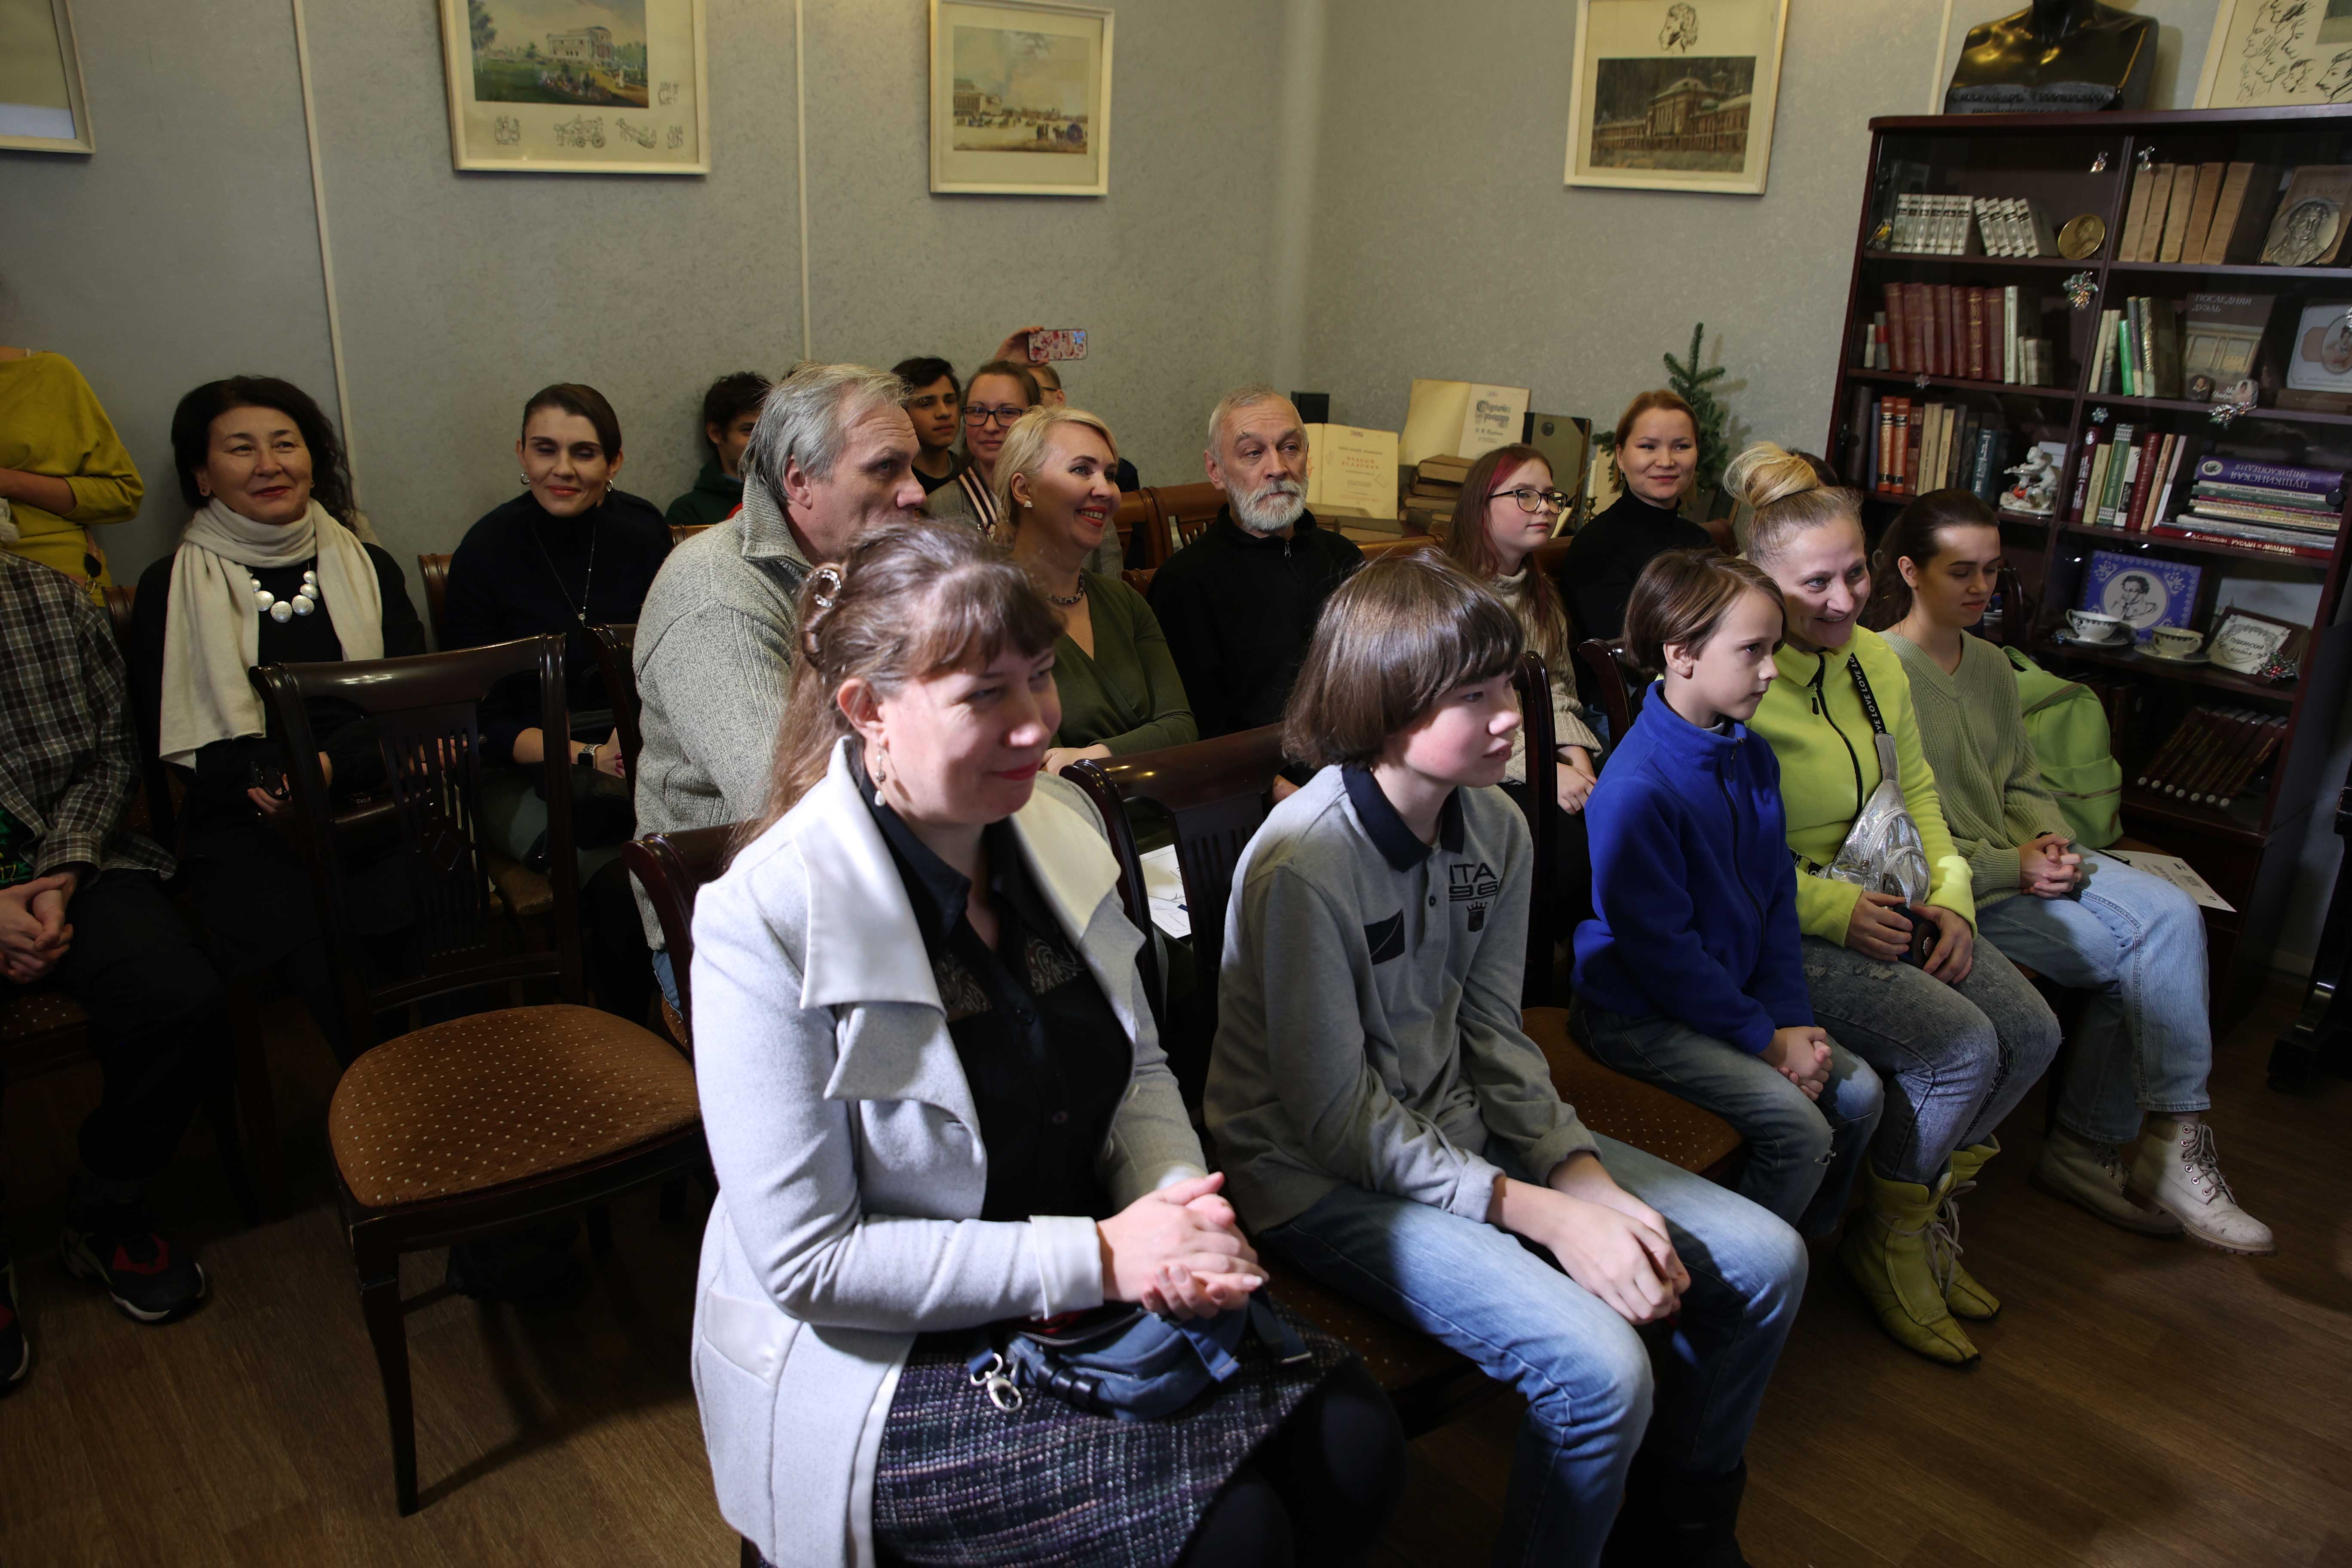 В преддверии празднования 135-летия со дня основания Центральной районной библиотеки имени А.С. Пушкина, 16 декабря прошла торжественная церемония празднования юбилея.